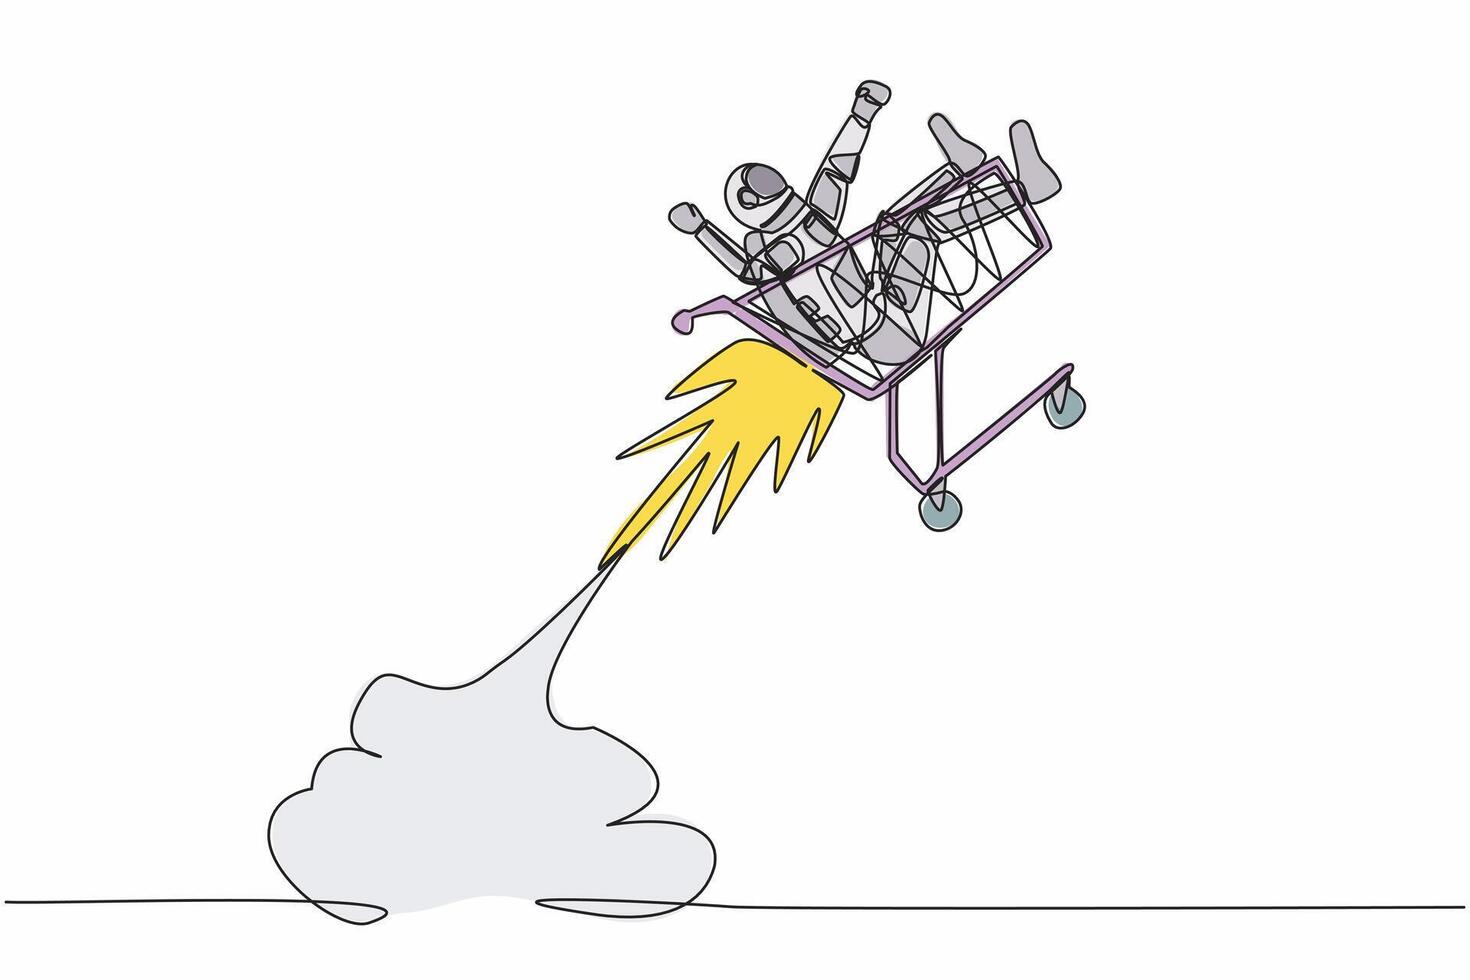 enda kontinuerlig linje teckning ung astronaut ridning handla vagn raket flygande i måne yta. affär förnödenheter för Plats utforskning. kosmonaut djup Plats. ett linje design vektor illustration